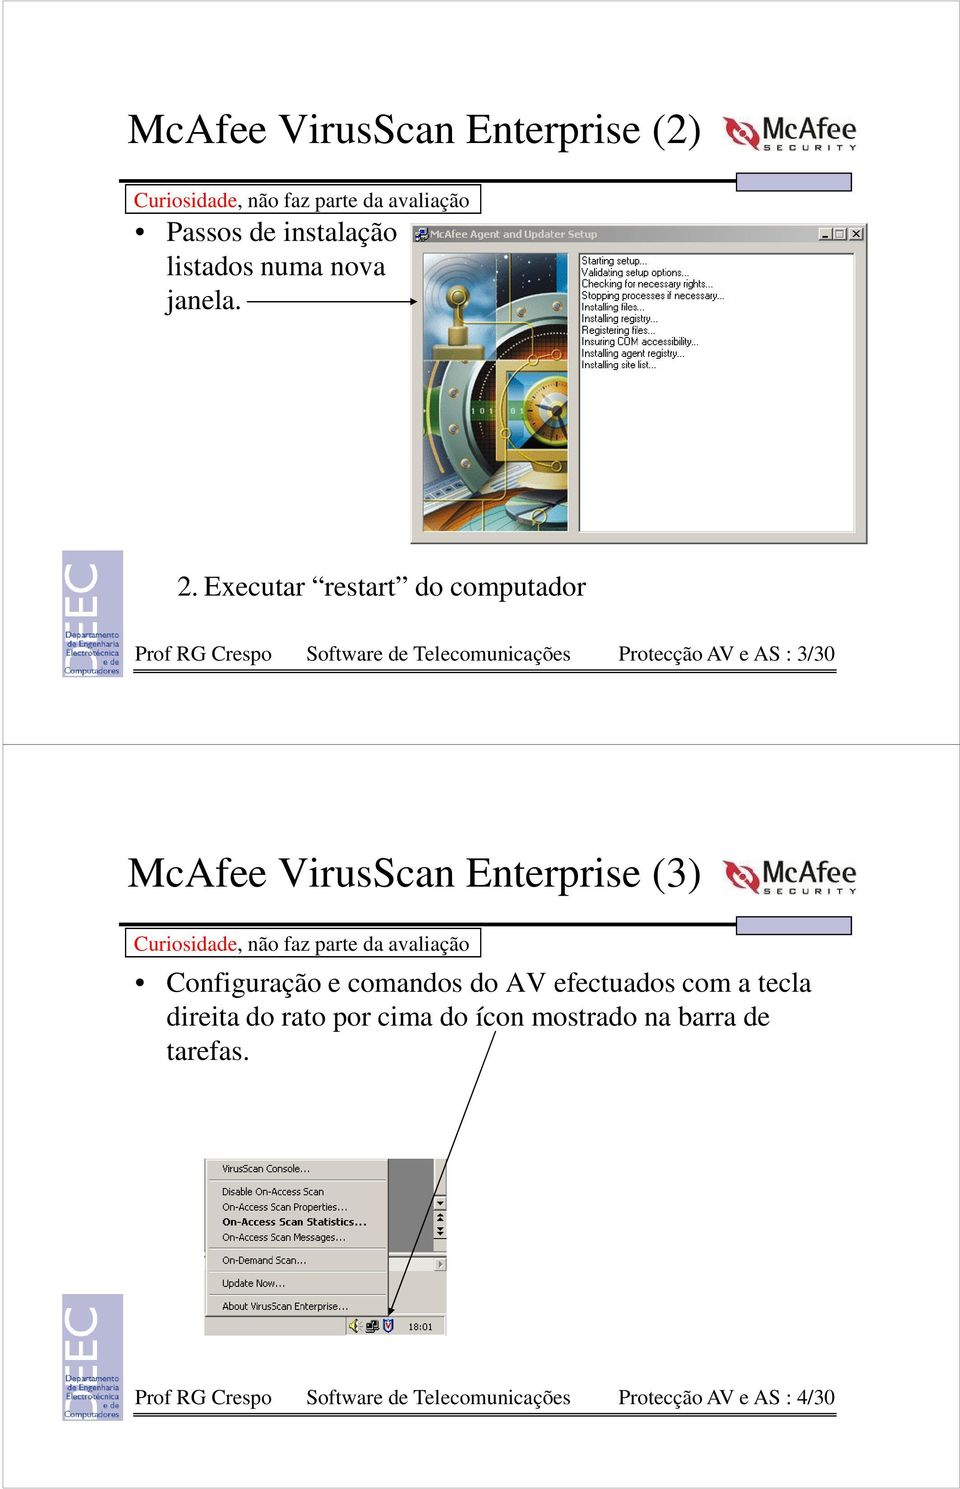 McAfee VirusScan Enterprise (3) Configuração e comandos do AV efectuados com a tecla direita do